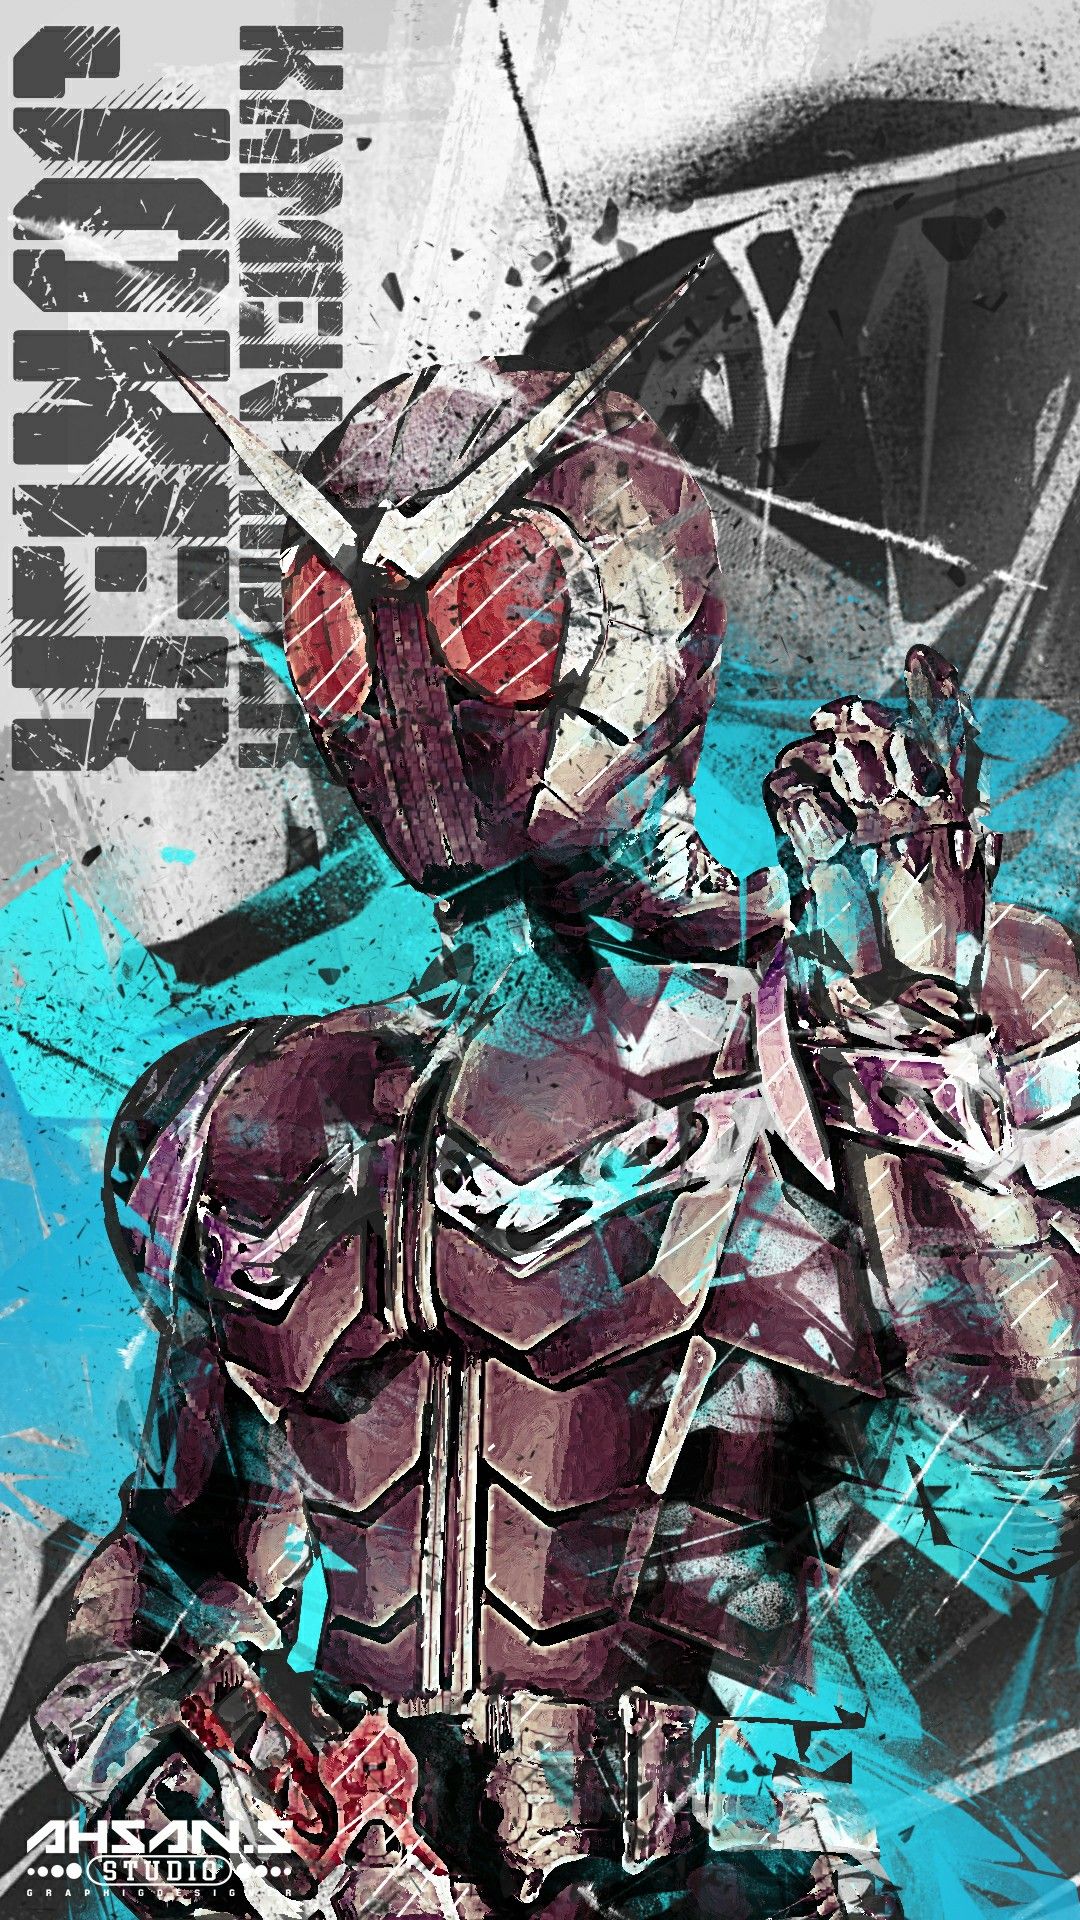 Kamen Rider Joker Kamen Rider W Kamen Rider Kabuto 仮面 ライダー アクセル イラスト Hd Wallpaper Backgrounds Download